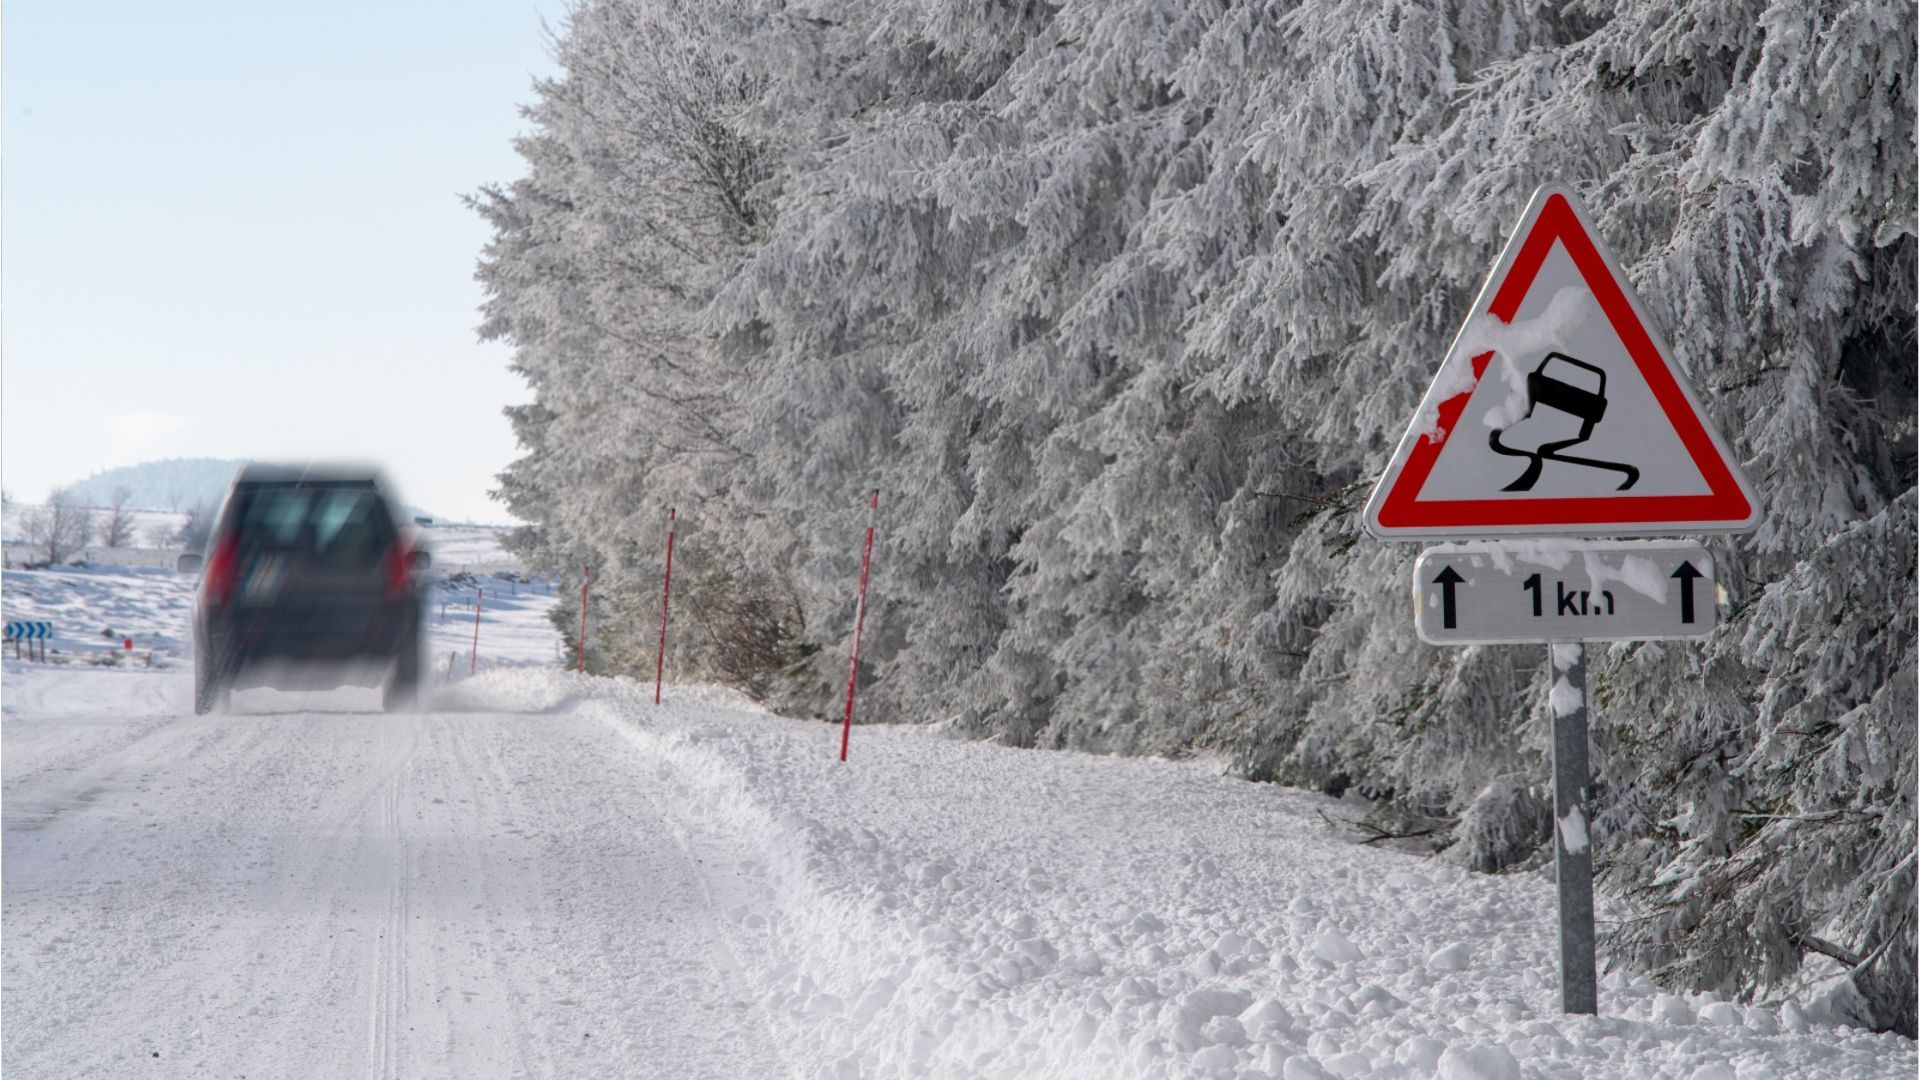 Schnee und gefrorene Nässe: Es wird glatt in Bayern